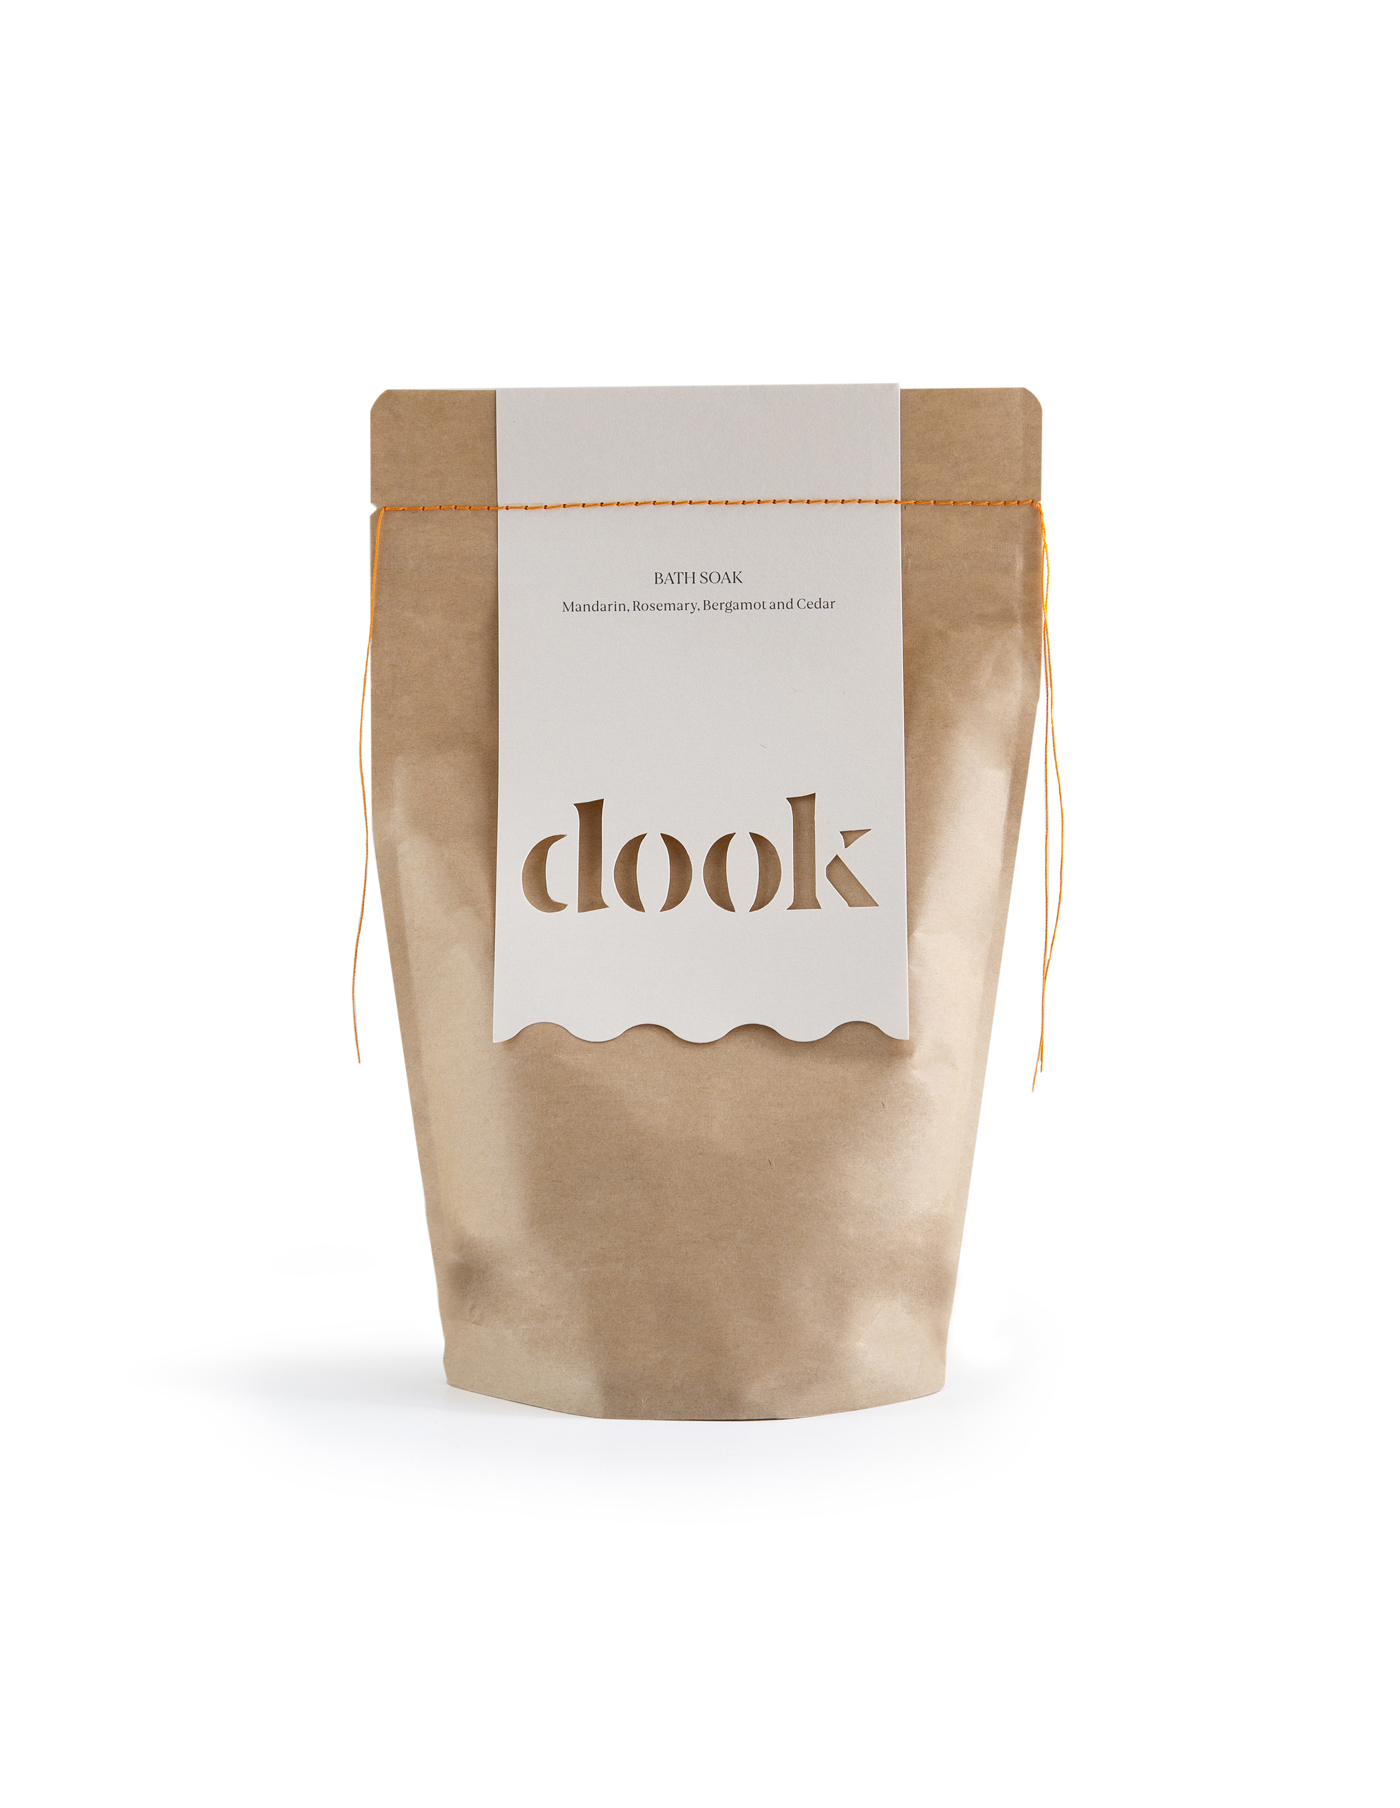 Dook Ltd Mandarin, Bergamot, Rosemary & Cedar Bath Salts Bag